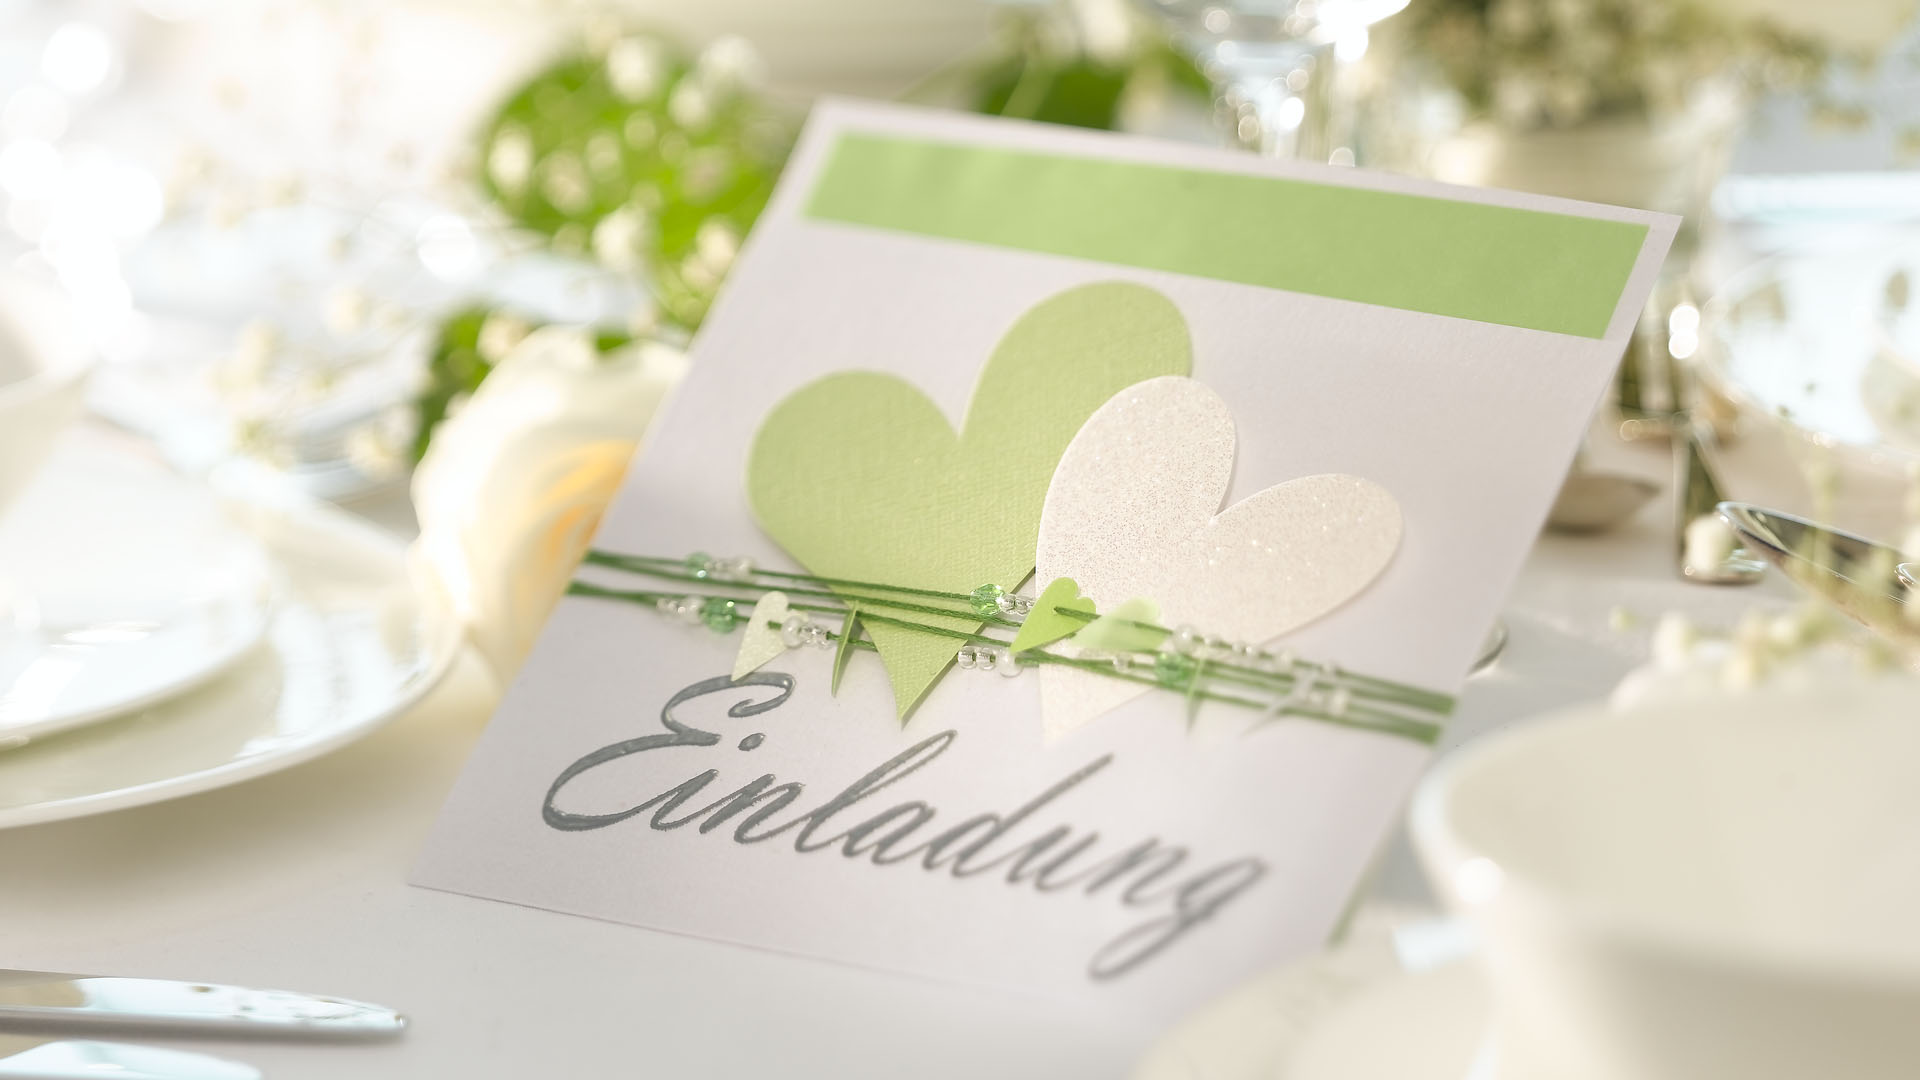 Ideen für Hochzeiten: Heartbeat in zartem Grün und Weiß | Einladungskarte mit vielen Herzen, passenden Perlen und einem großen, gestempelten Schriftzug